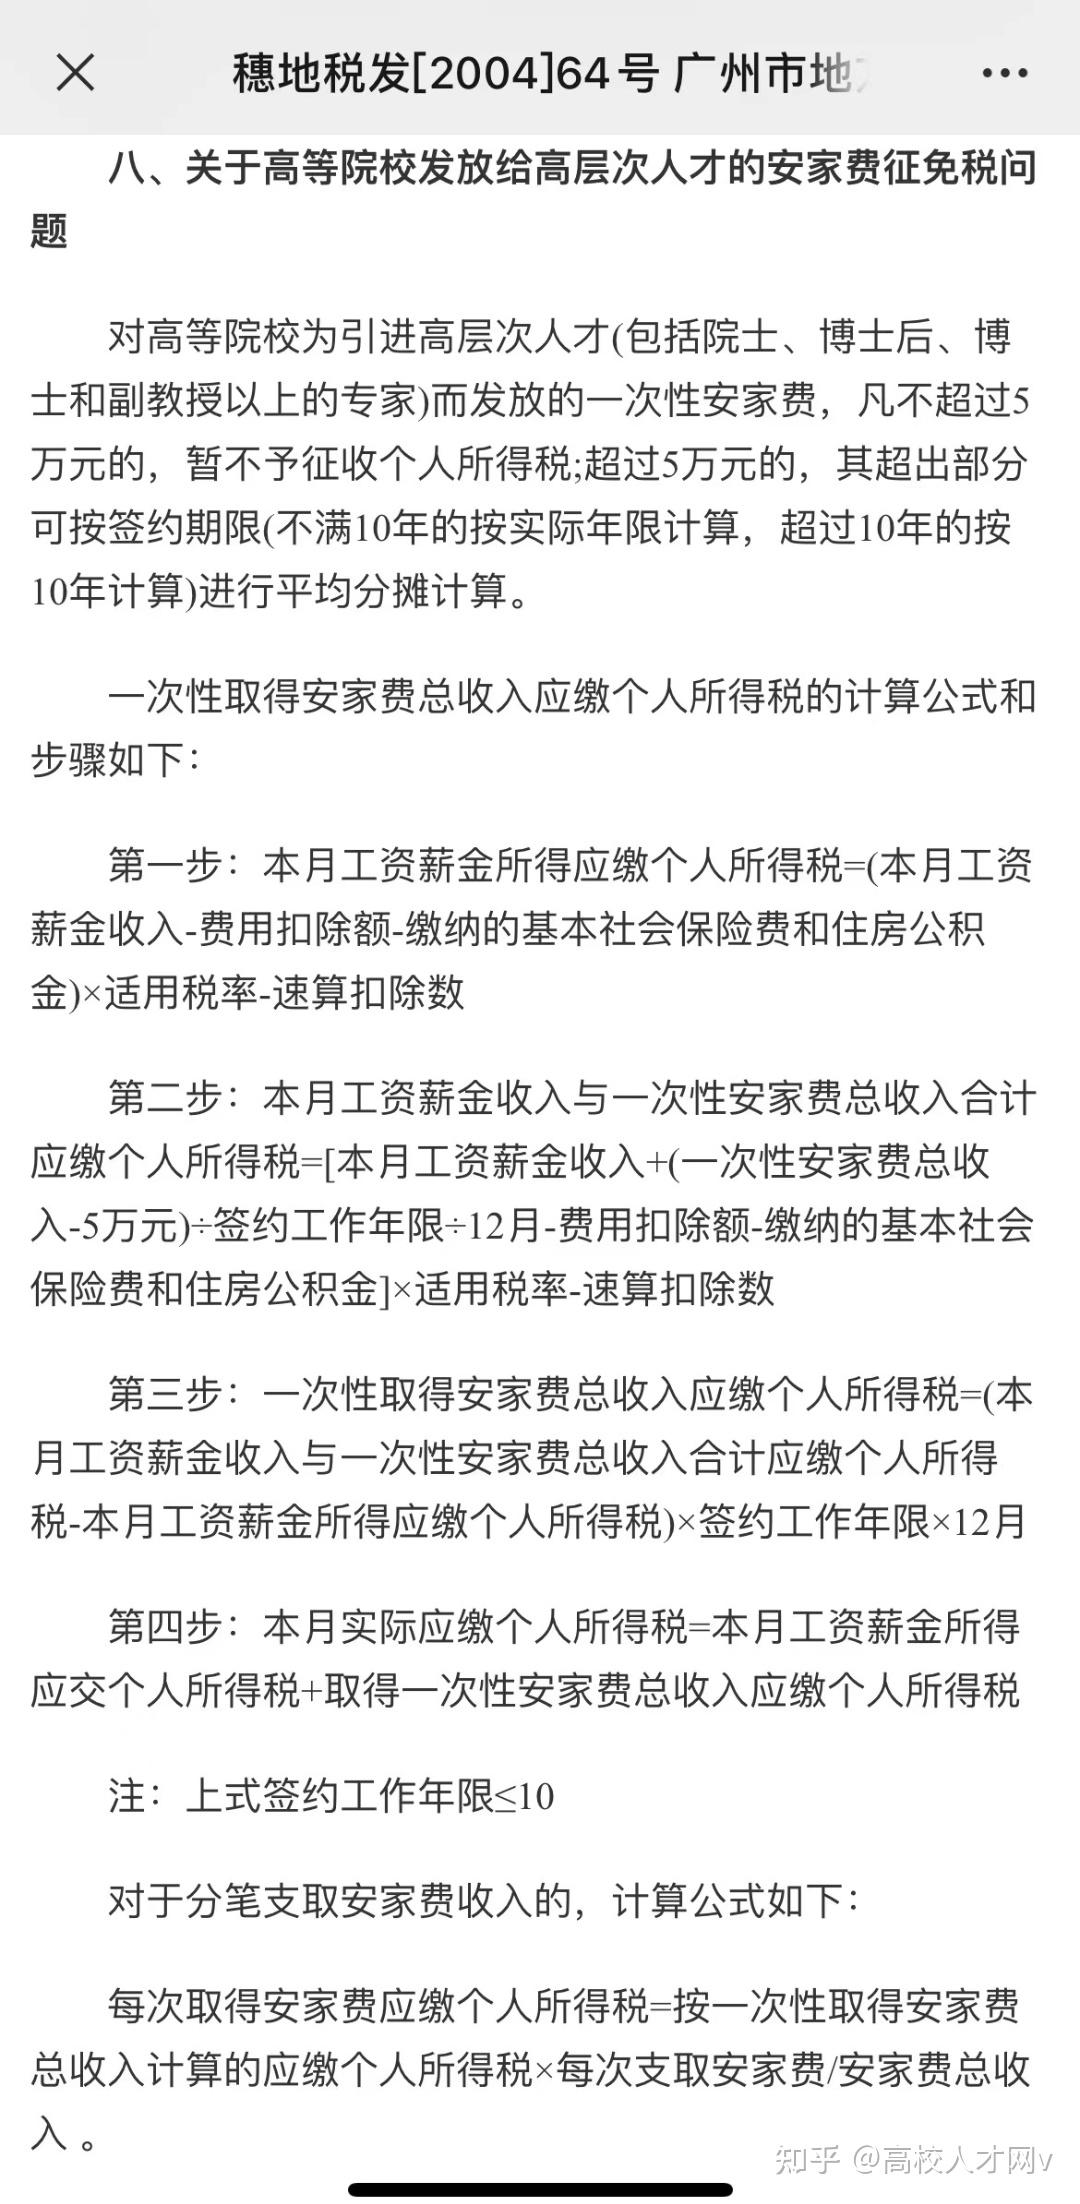 [通知公告]关于开展广州市博士安家费申报受理工作的通知-广州市人力资源和社会保障局网站